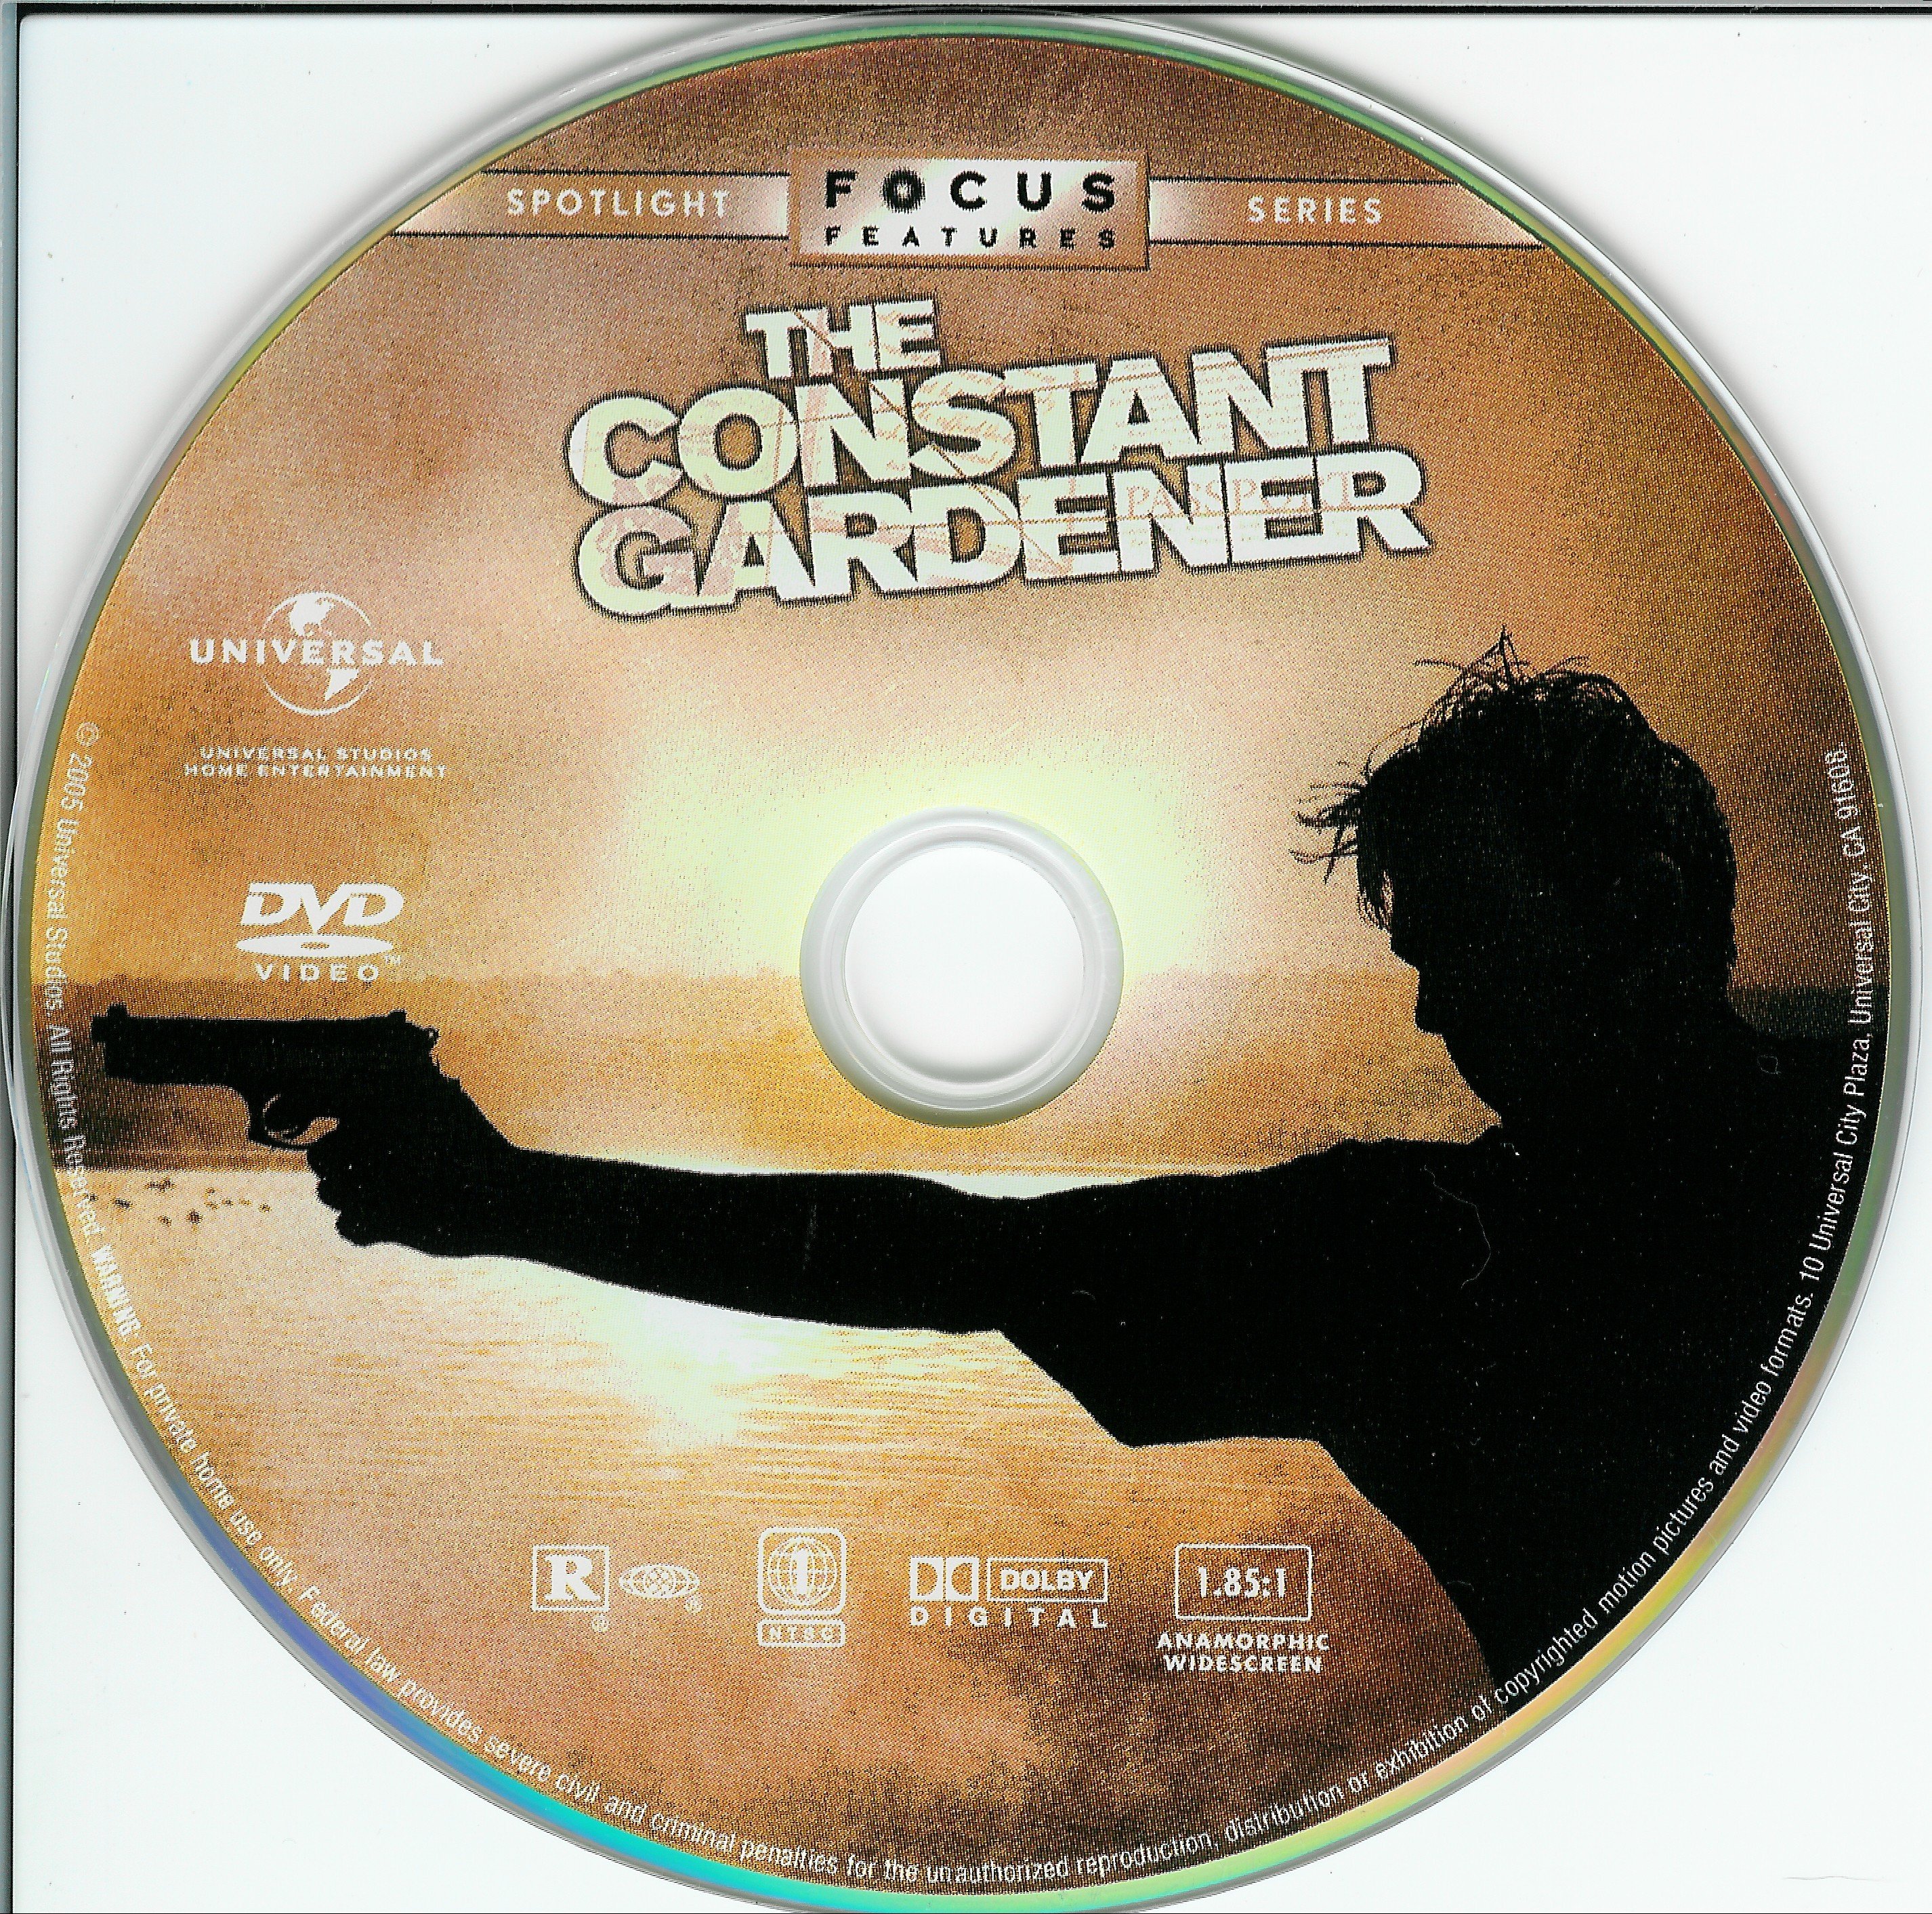 The constant gardener